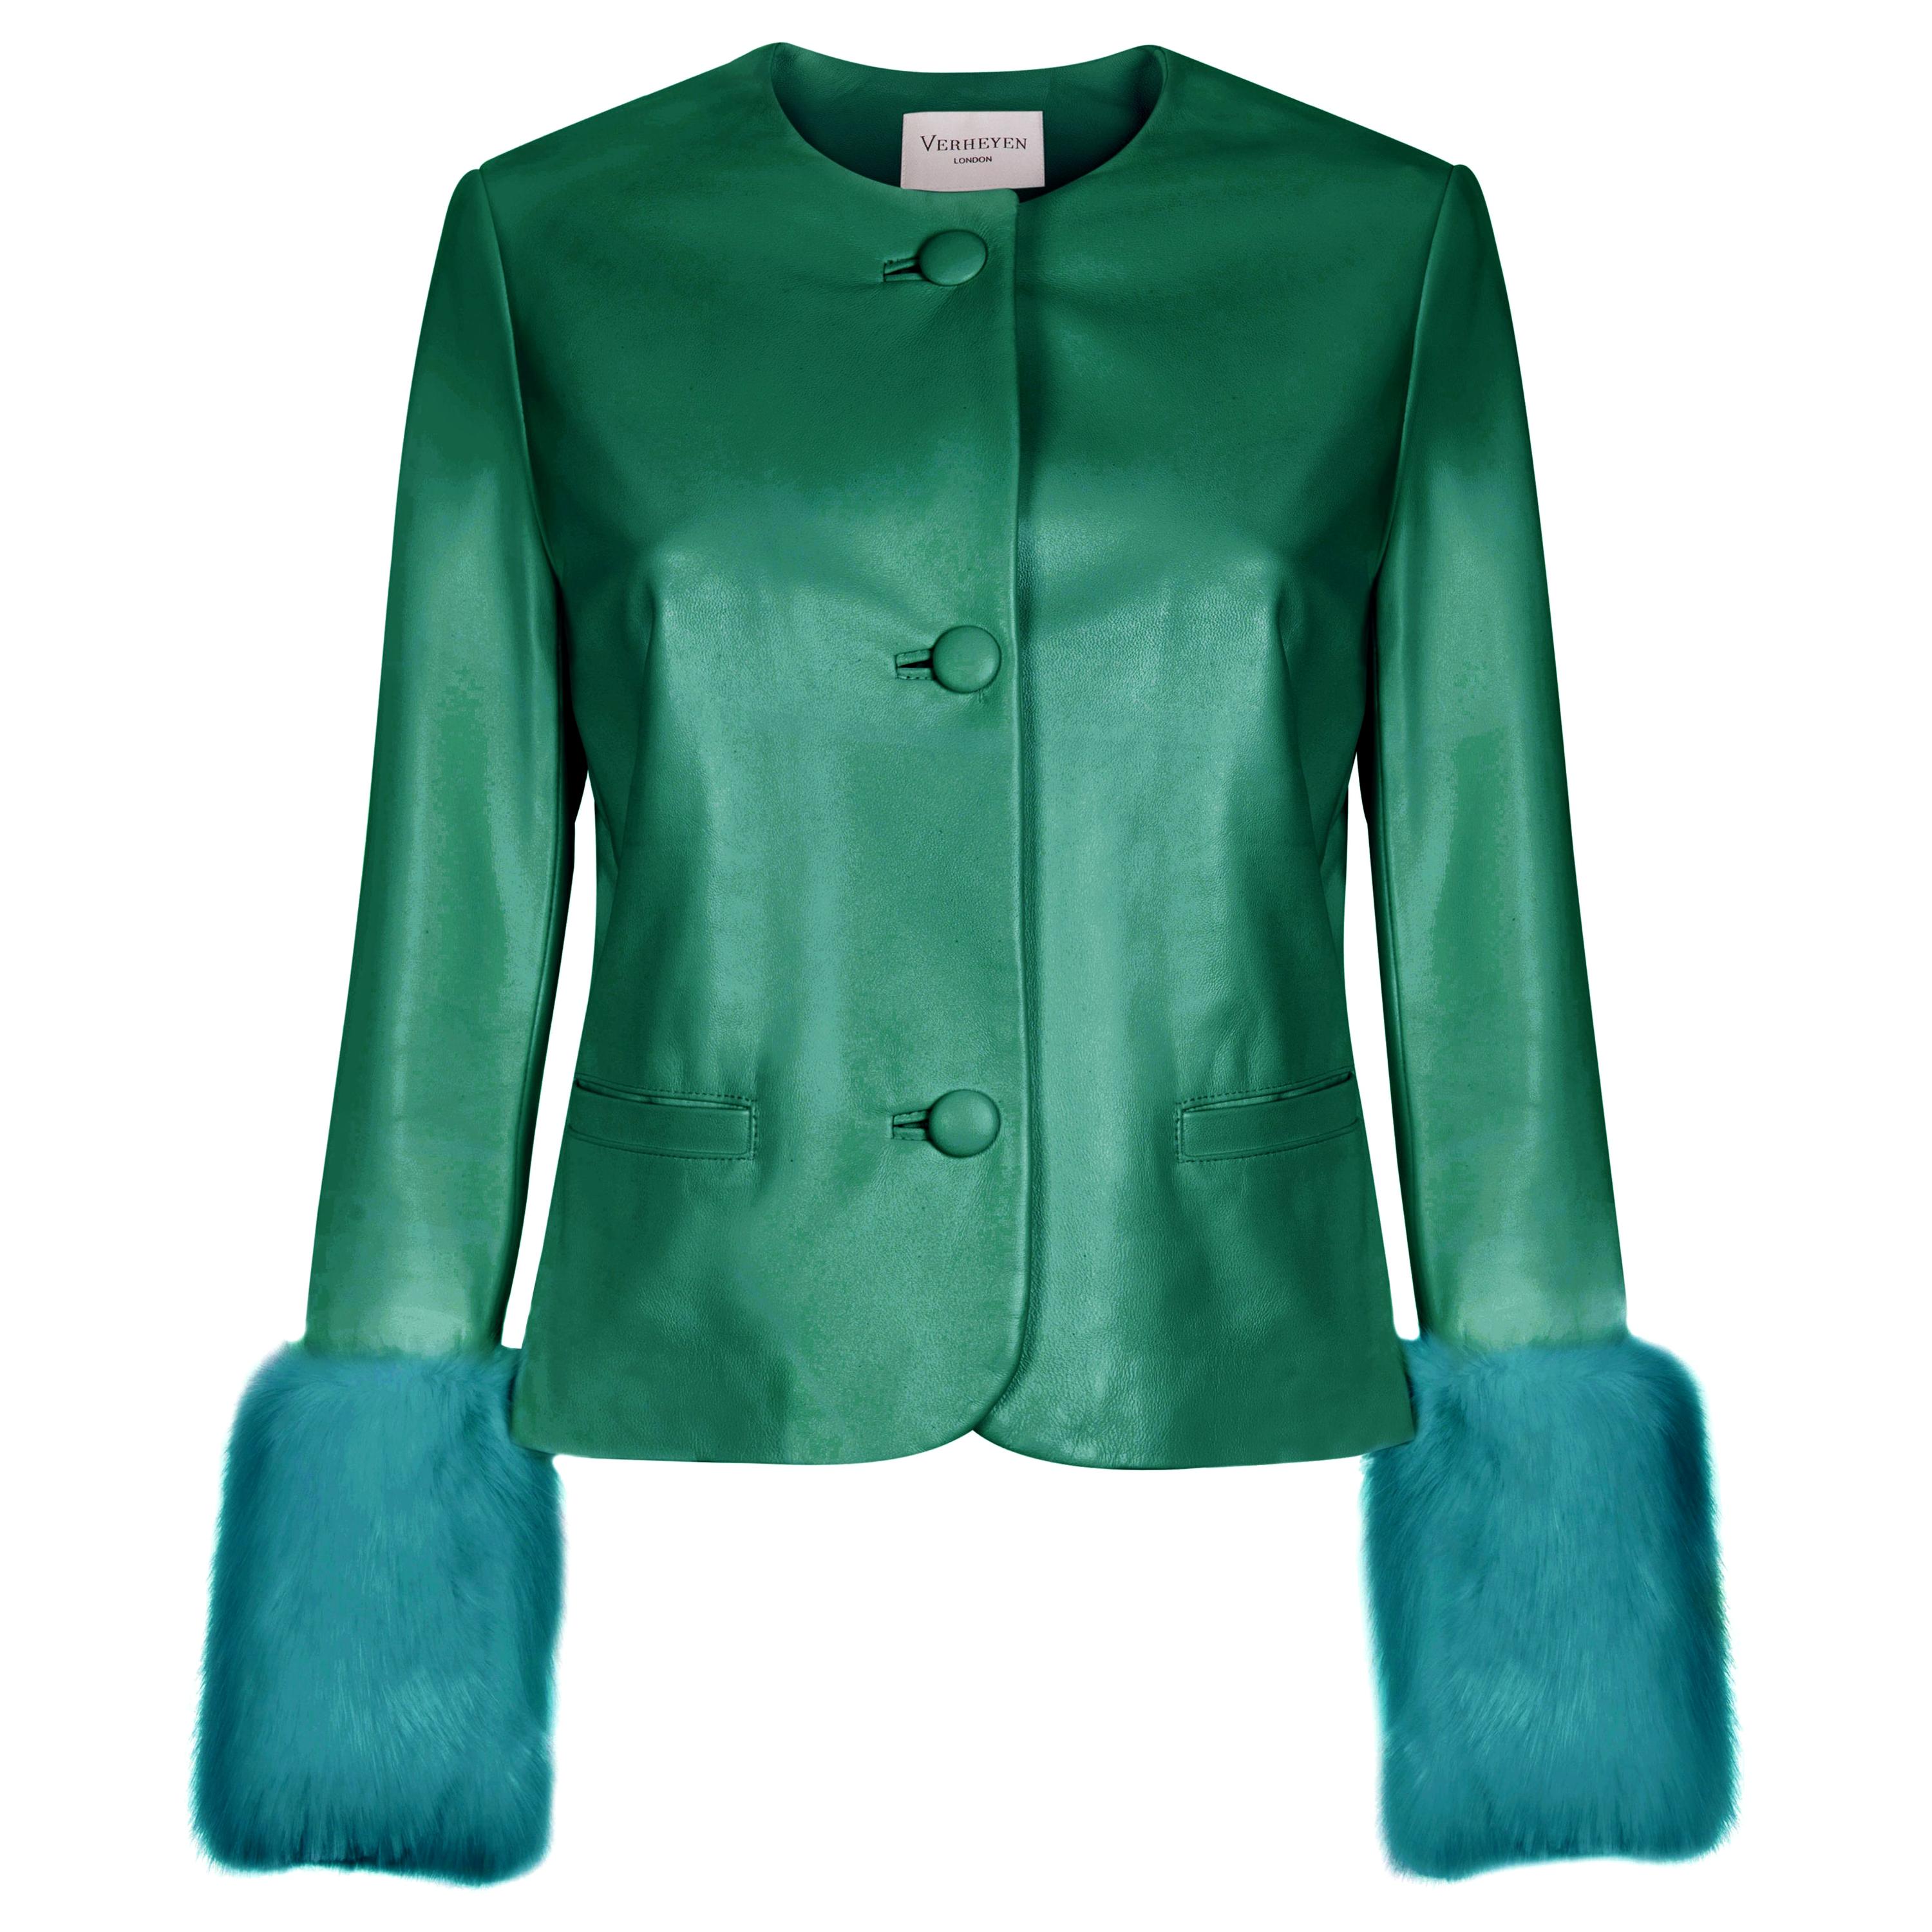 Verheyen Vita Cropped Jacket in Emerald Green leather & Faux Fur - Size uk 8